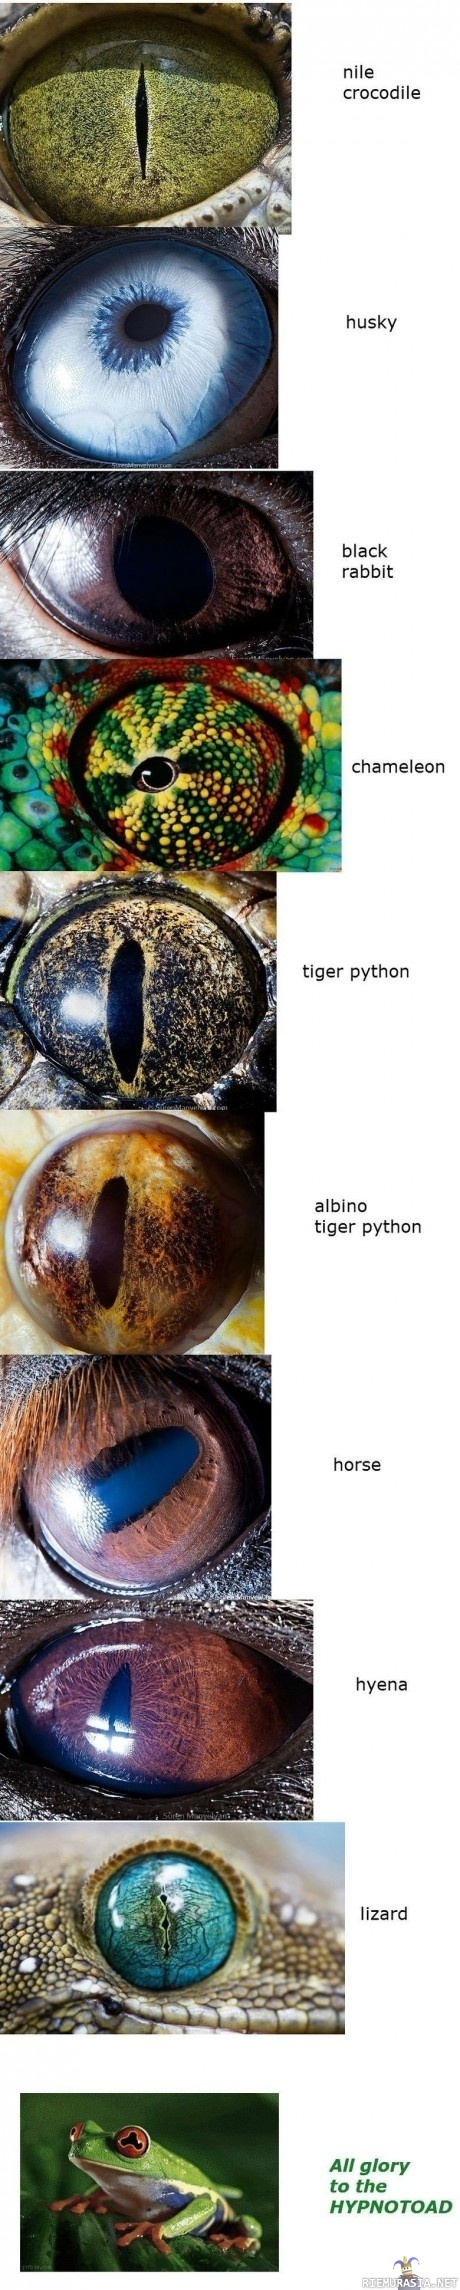 Kuvia eläinten silmistä